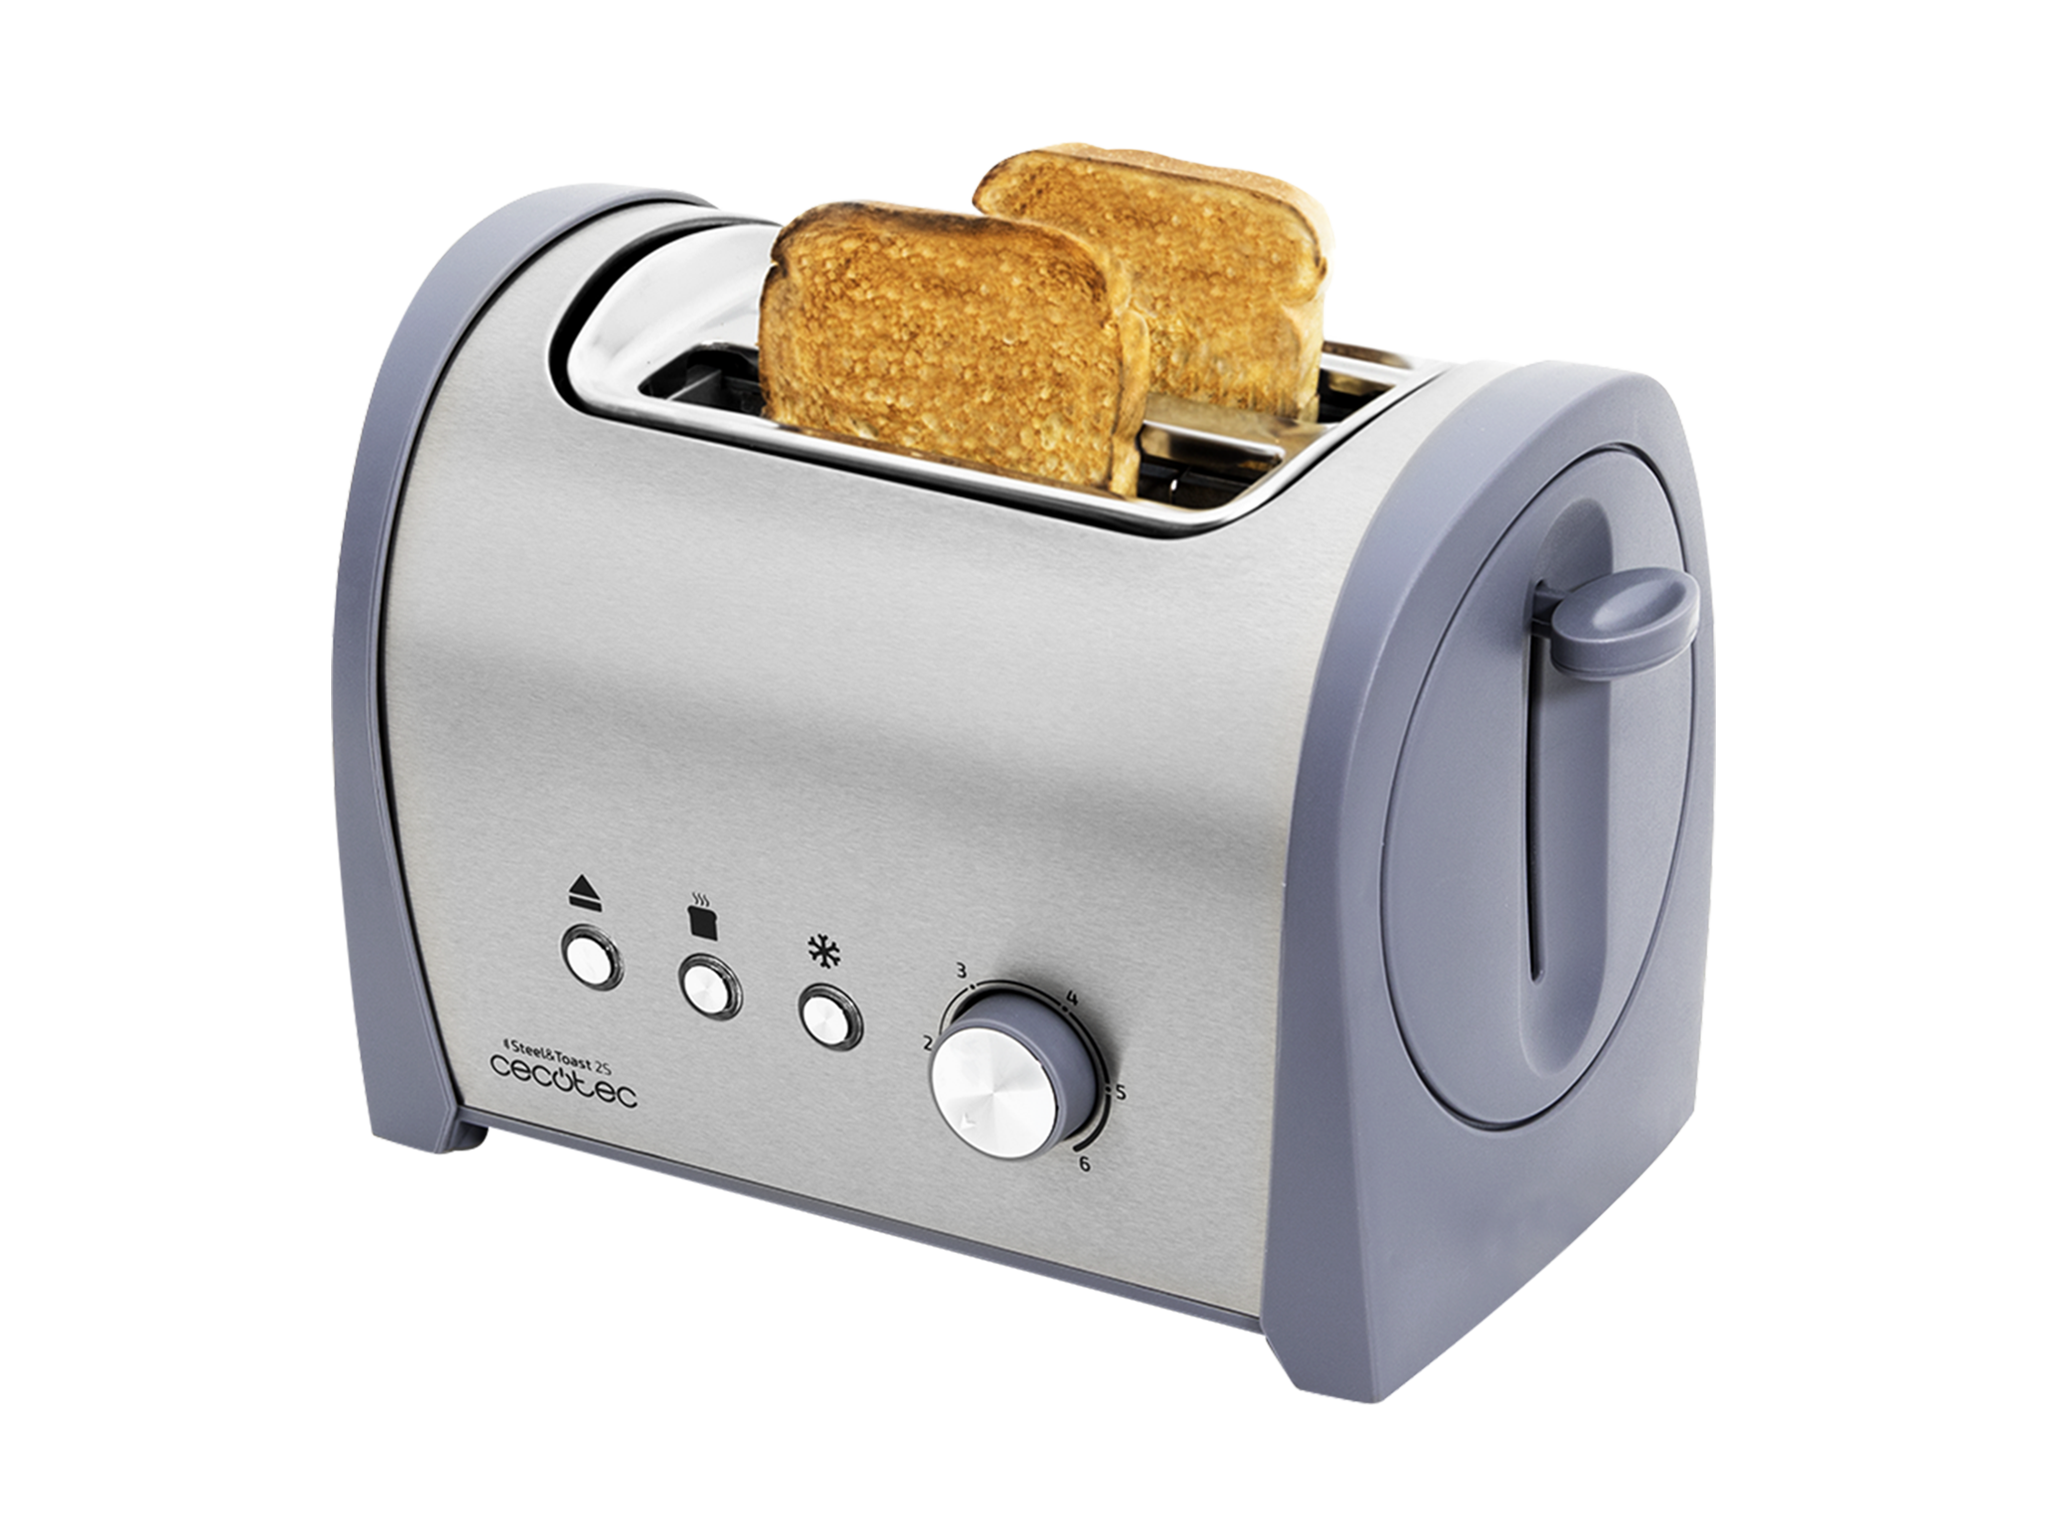 Grille-pain en acier Steel&Toast 2S. 6 niveaux de puissance, capacité pour 2 toasts, 3 fonctions (Griller, Réchauffer, Décongeler), support pour petits pains et plateau ramasse-miettes inclus, 800 W